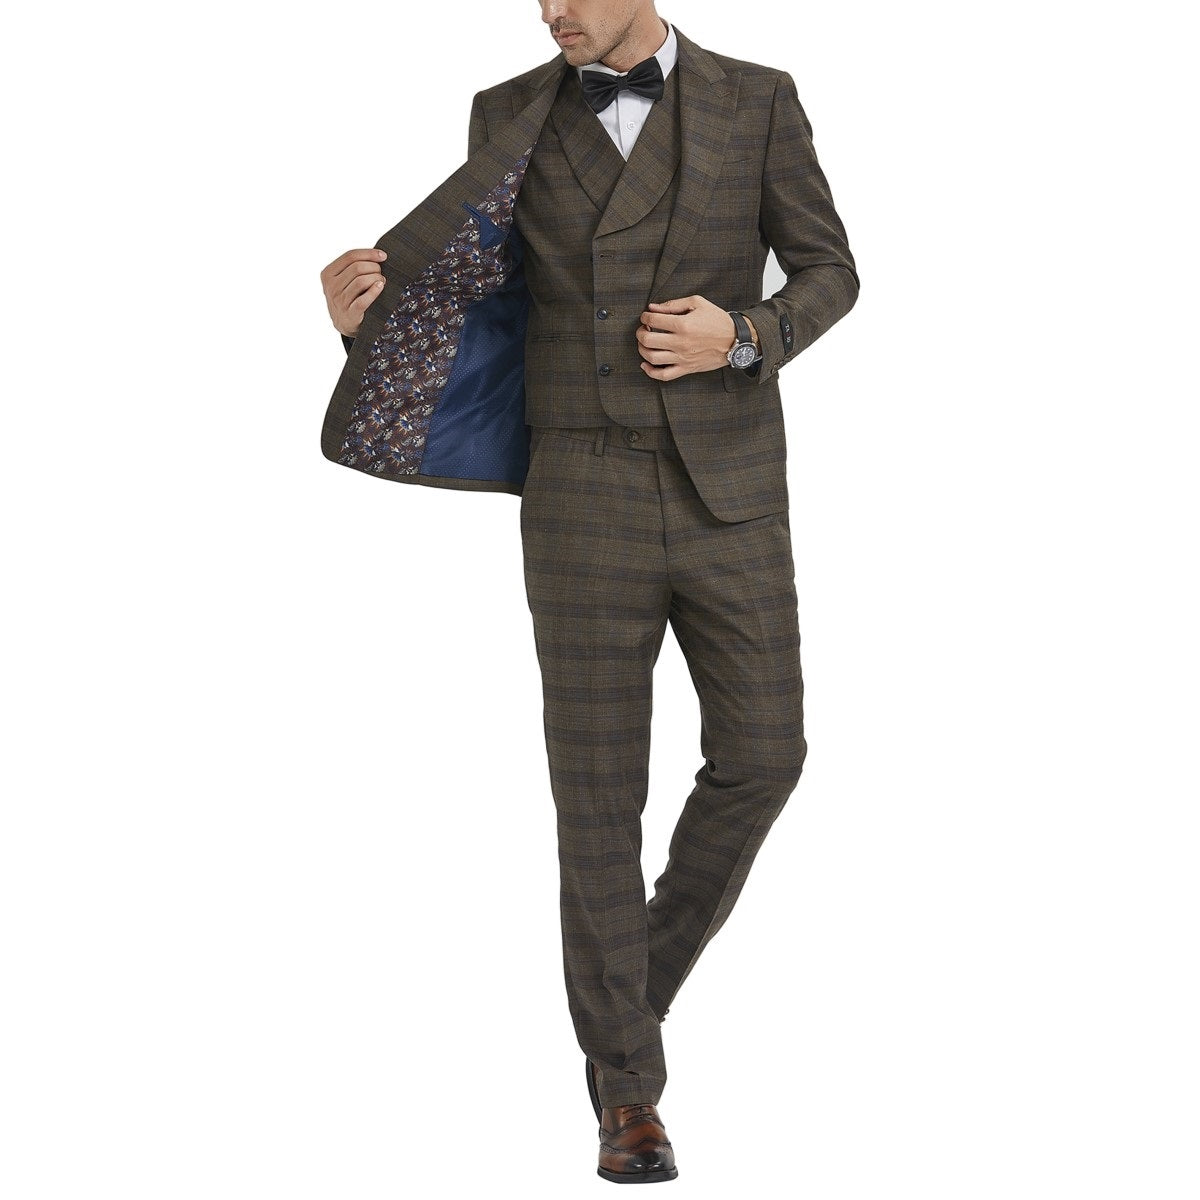 Traje Formal para Hombre TA-M354SK-03 - Formal Suit for Men